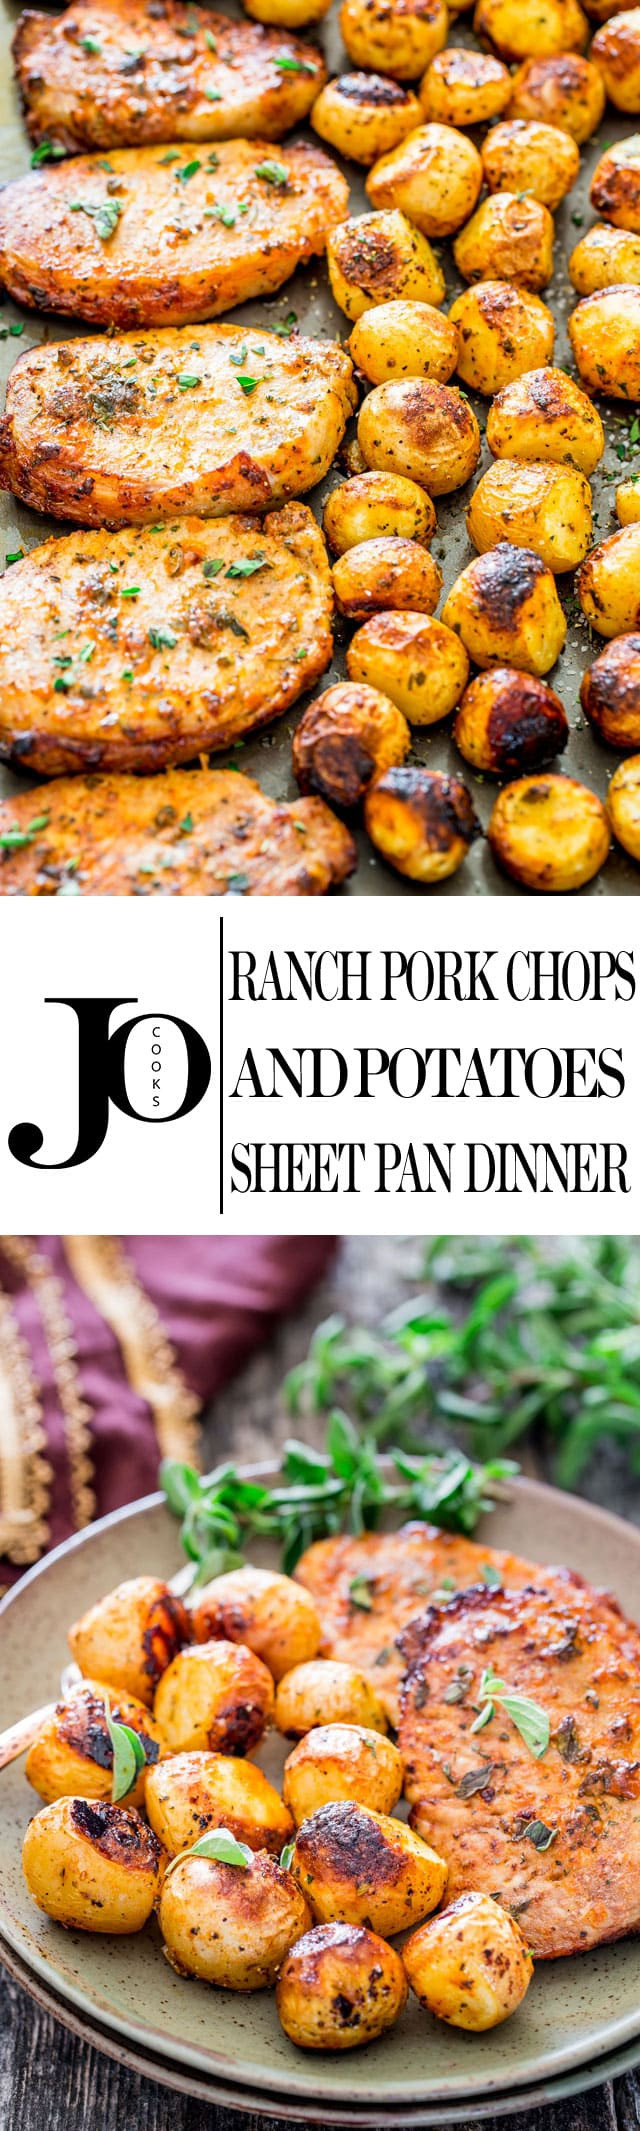 Sheet Pan Dinners Pork Chops
 Ranch Pork Chops and Potatoes Sheet Pan Dinner Jo Cooks